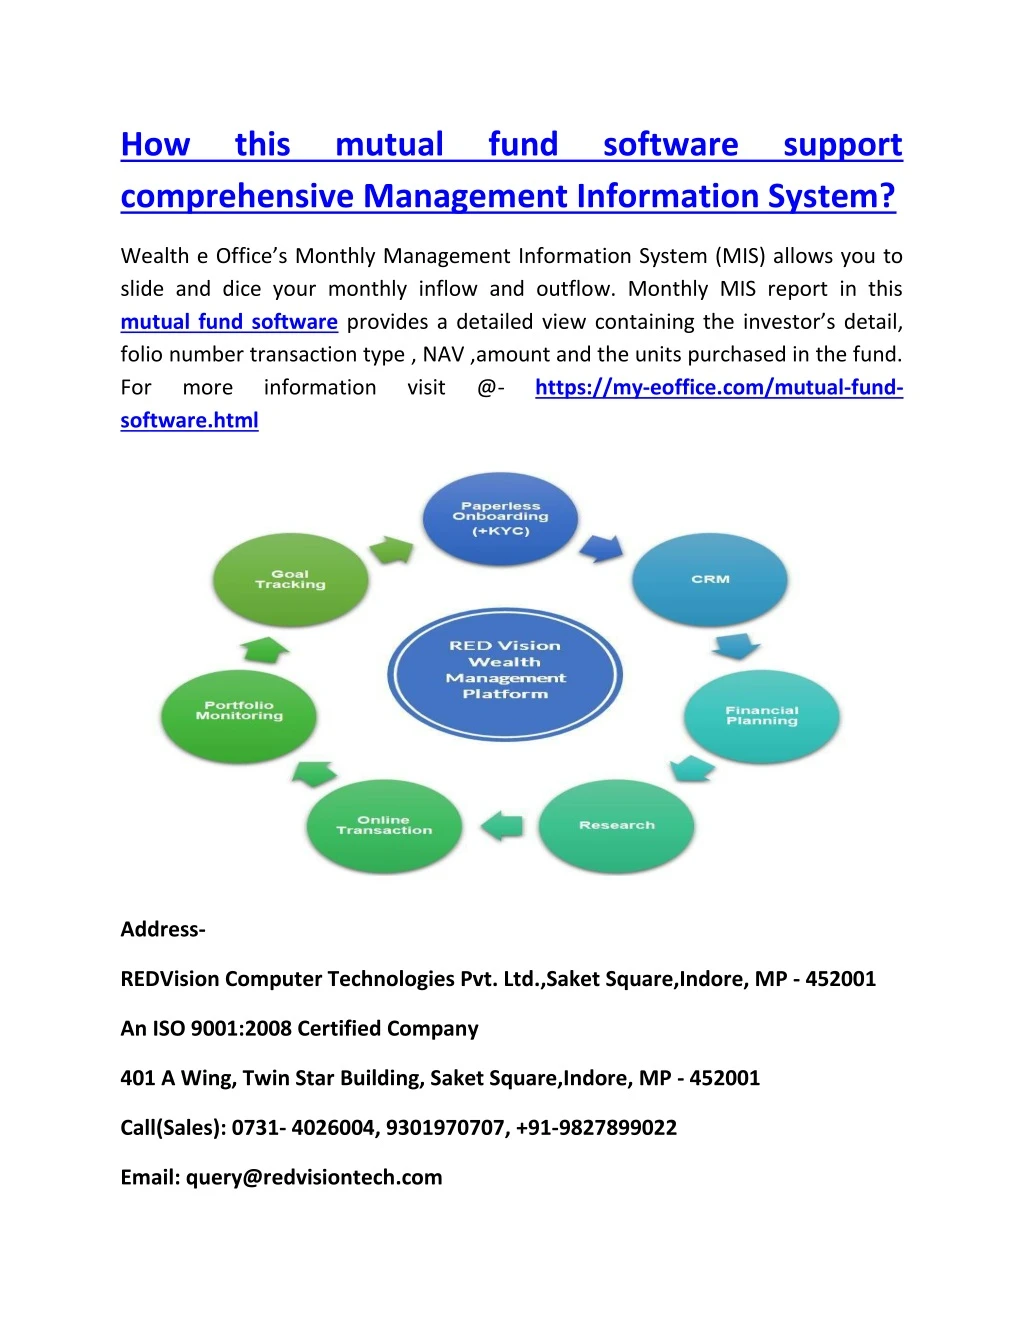 how comprehensive management information system